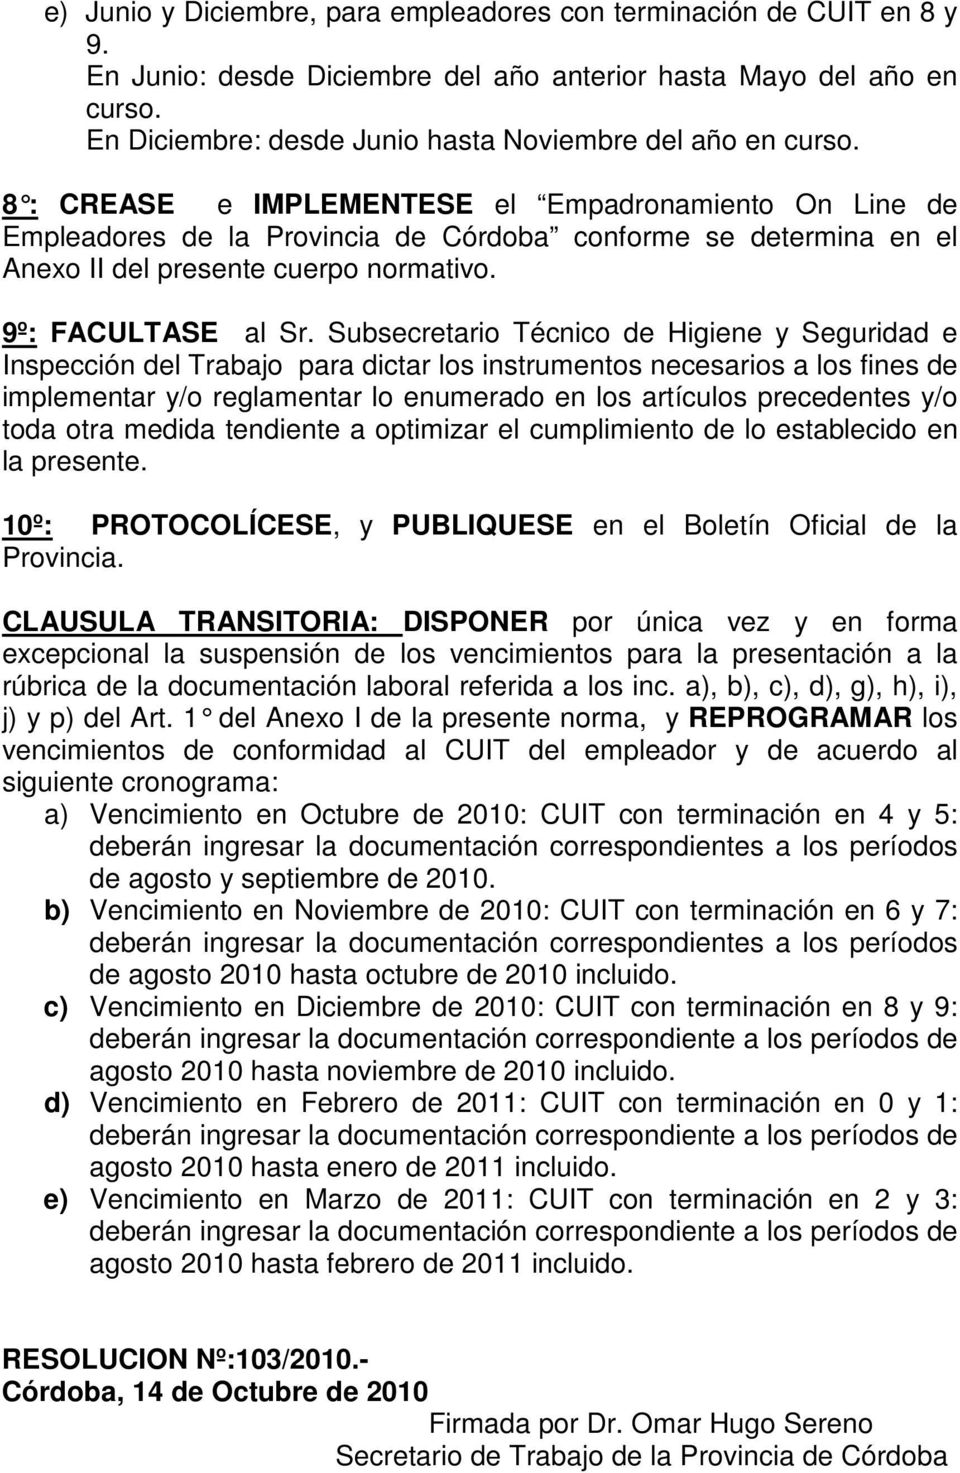 8 : CREASE e IMPLEMENTESE el Empadronamiento On Line de Empleadores de la Provincia de Córdoba conforme se determina en el Anexo II del presente cuerpo normativo. 9º: FACULTASE al Sr.